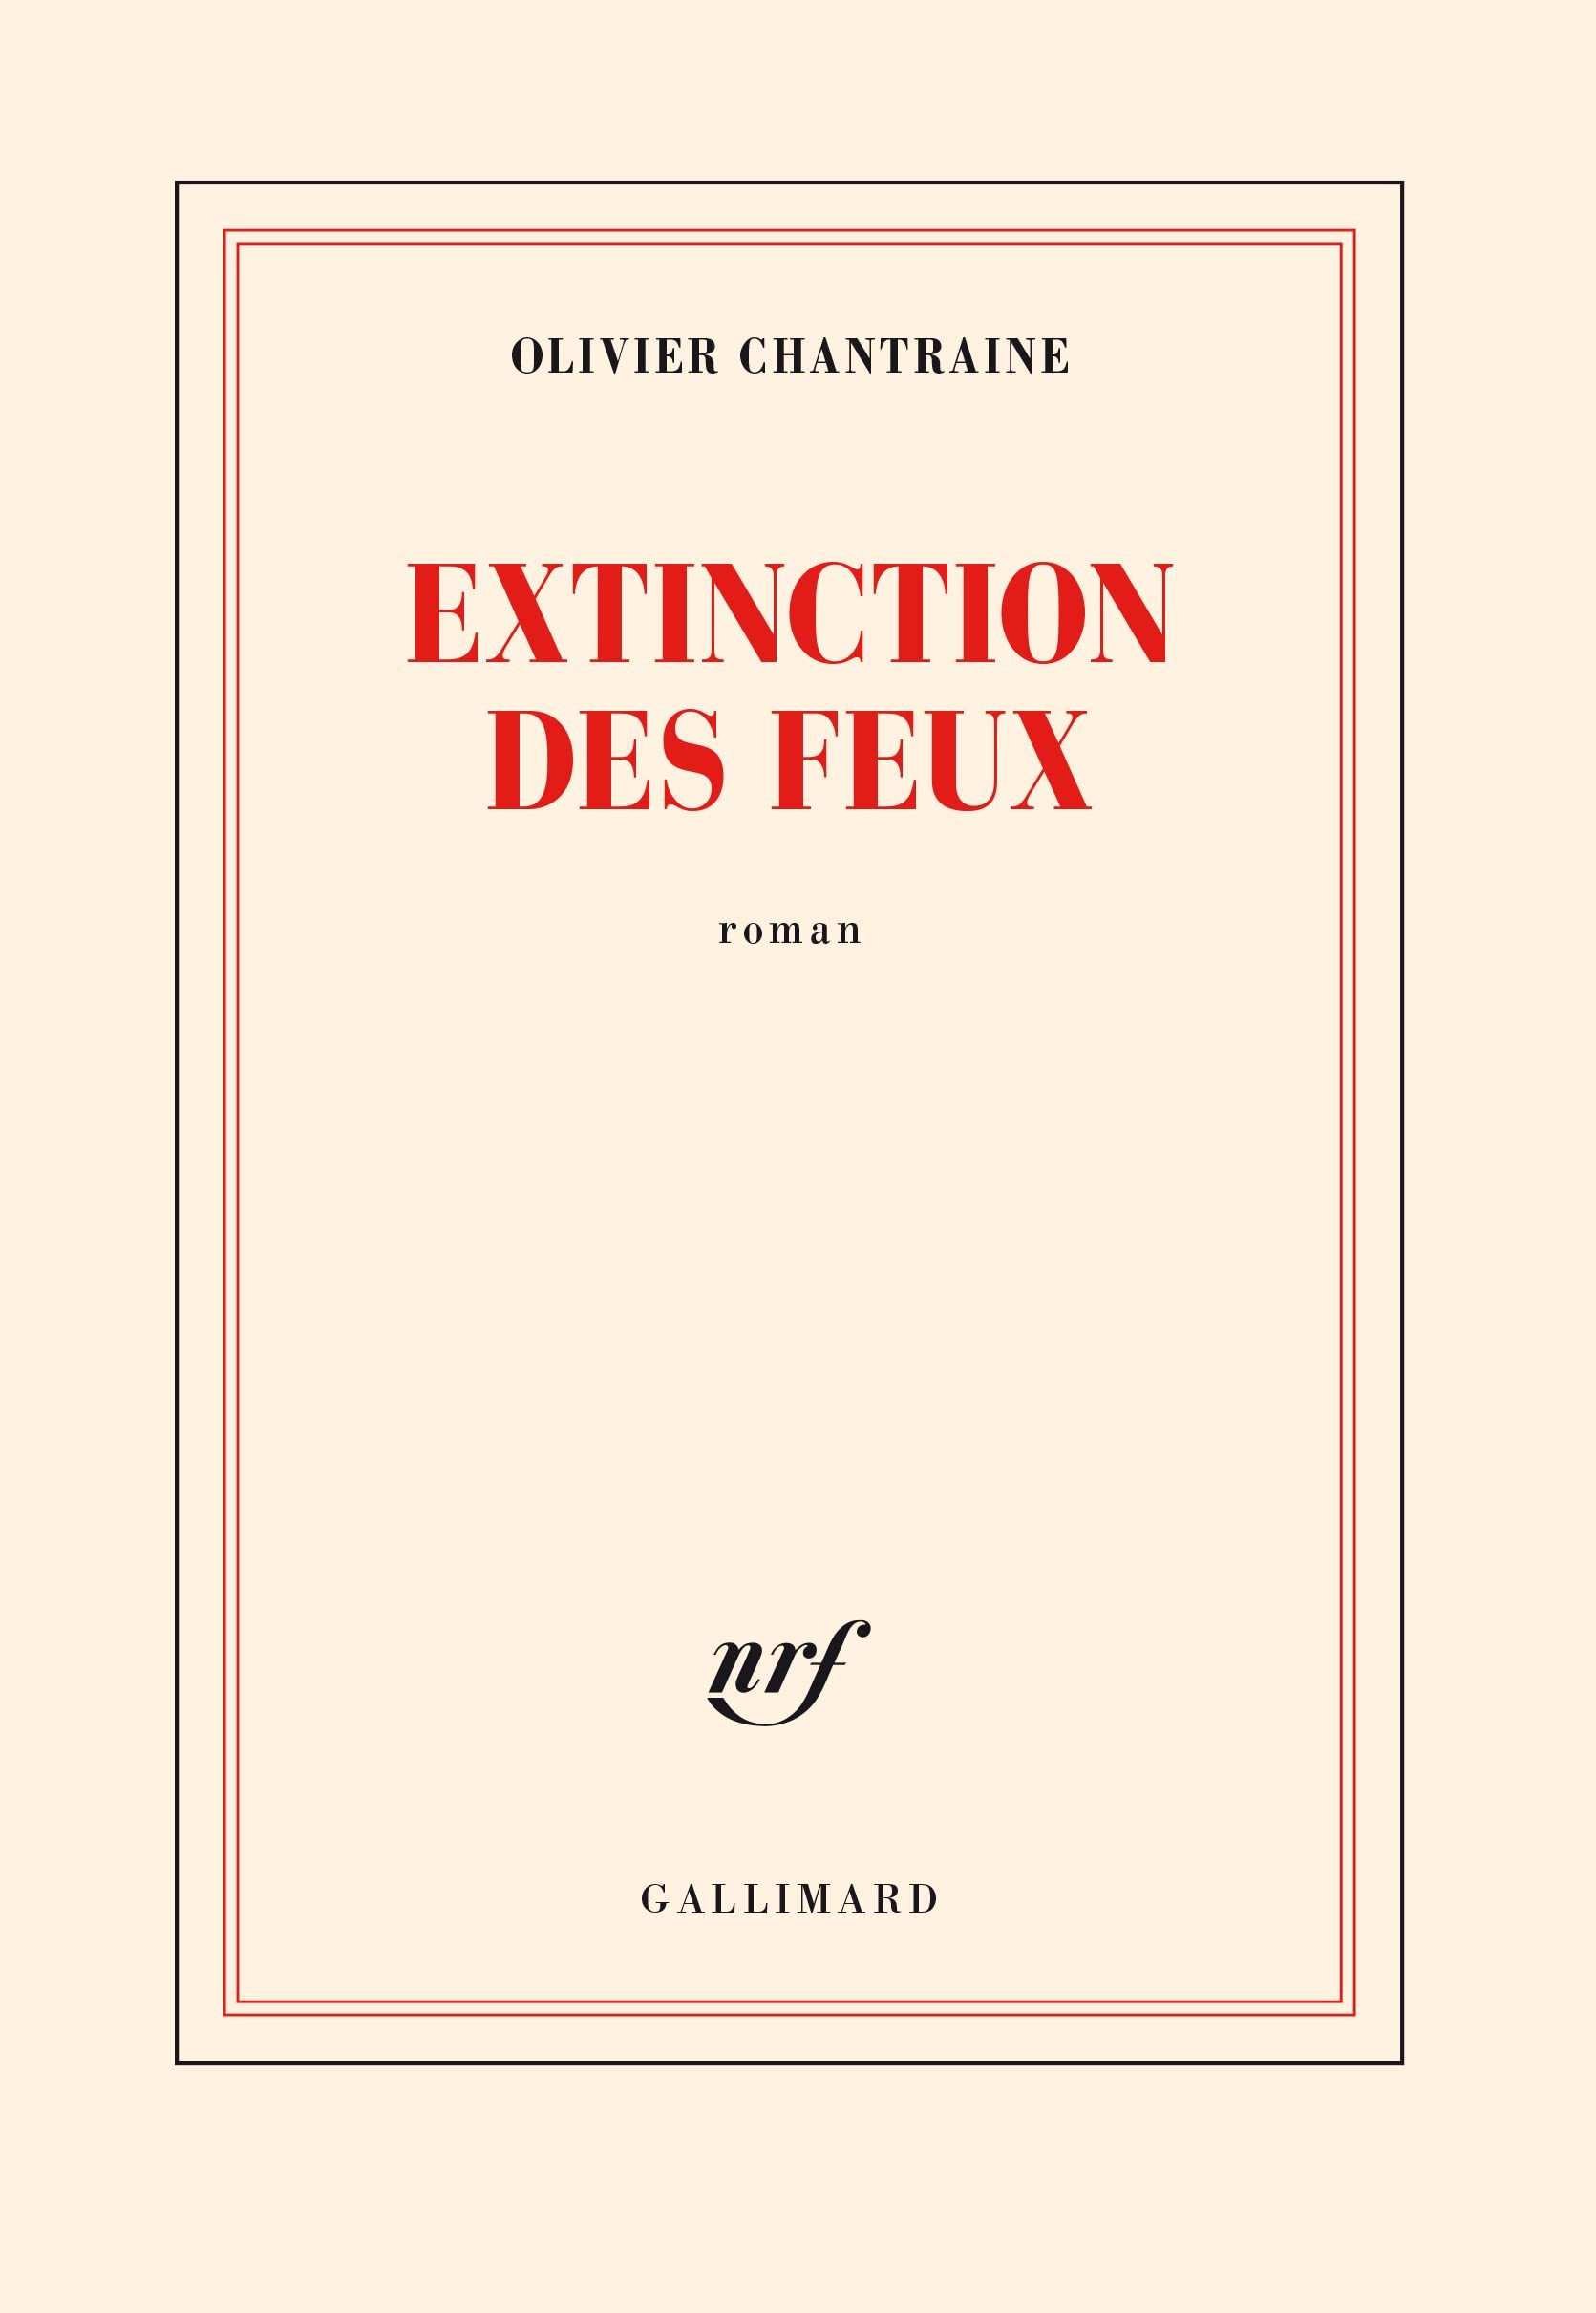 Olivier Chantraine – Extinction des feux